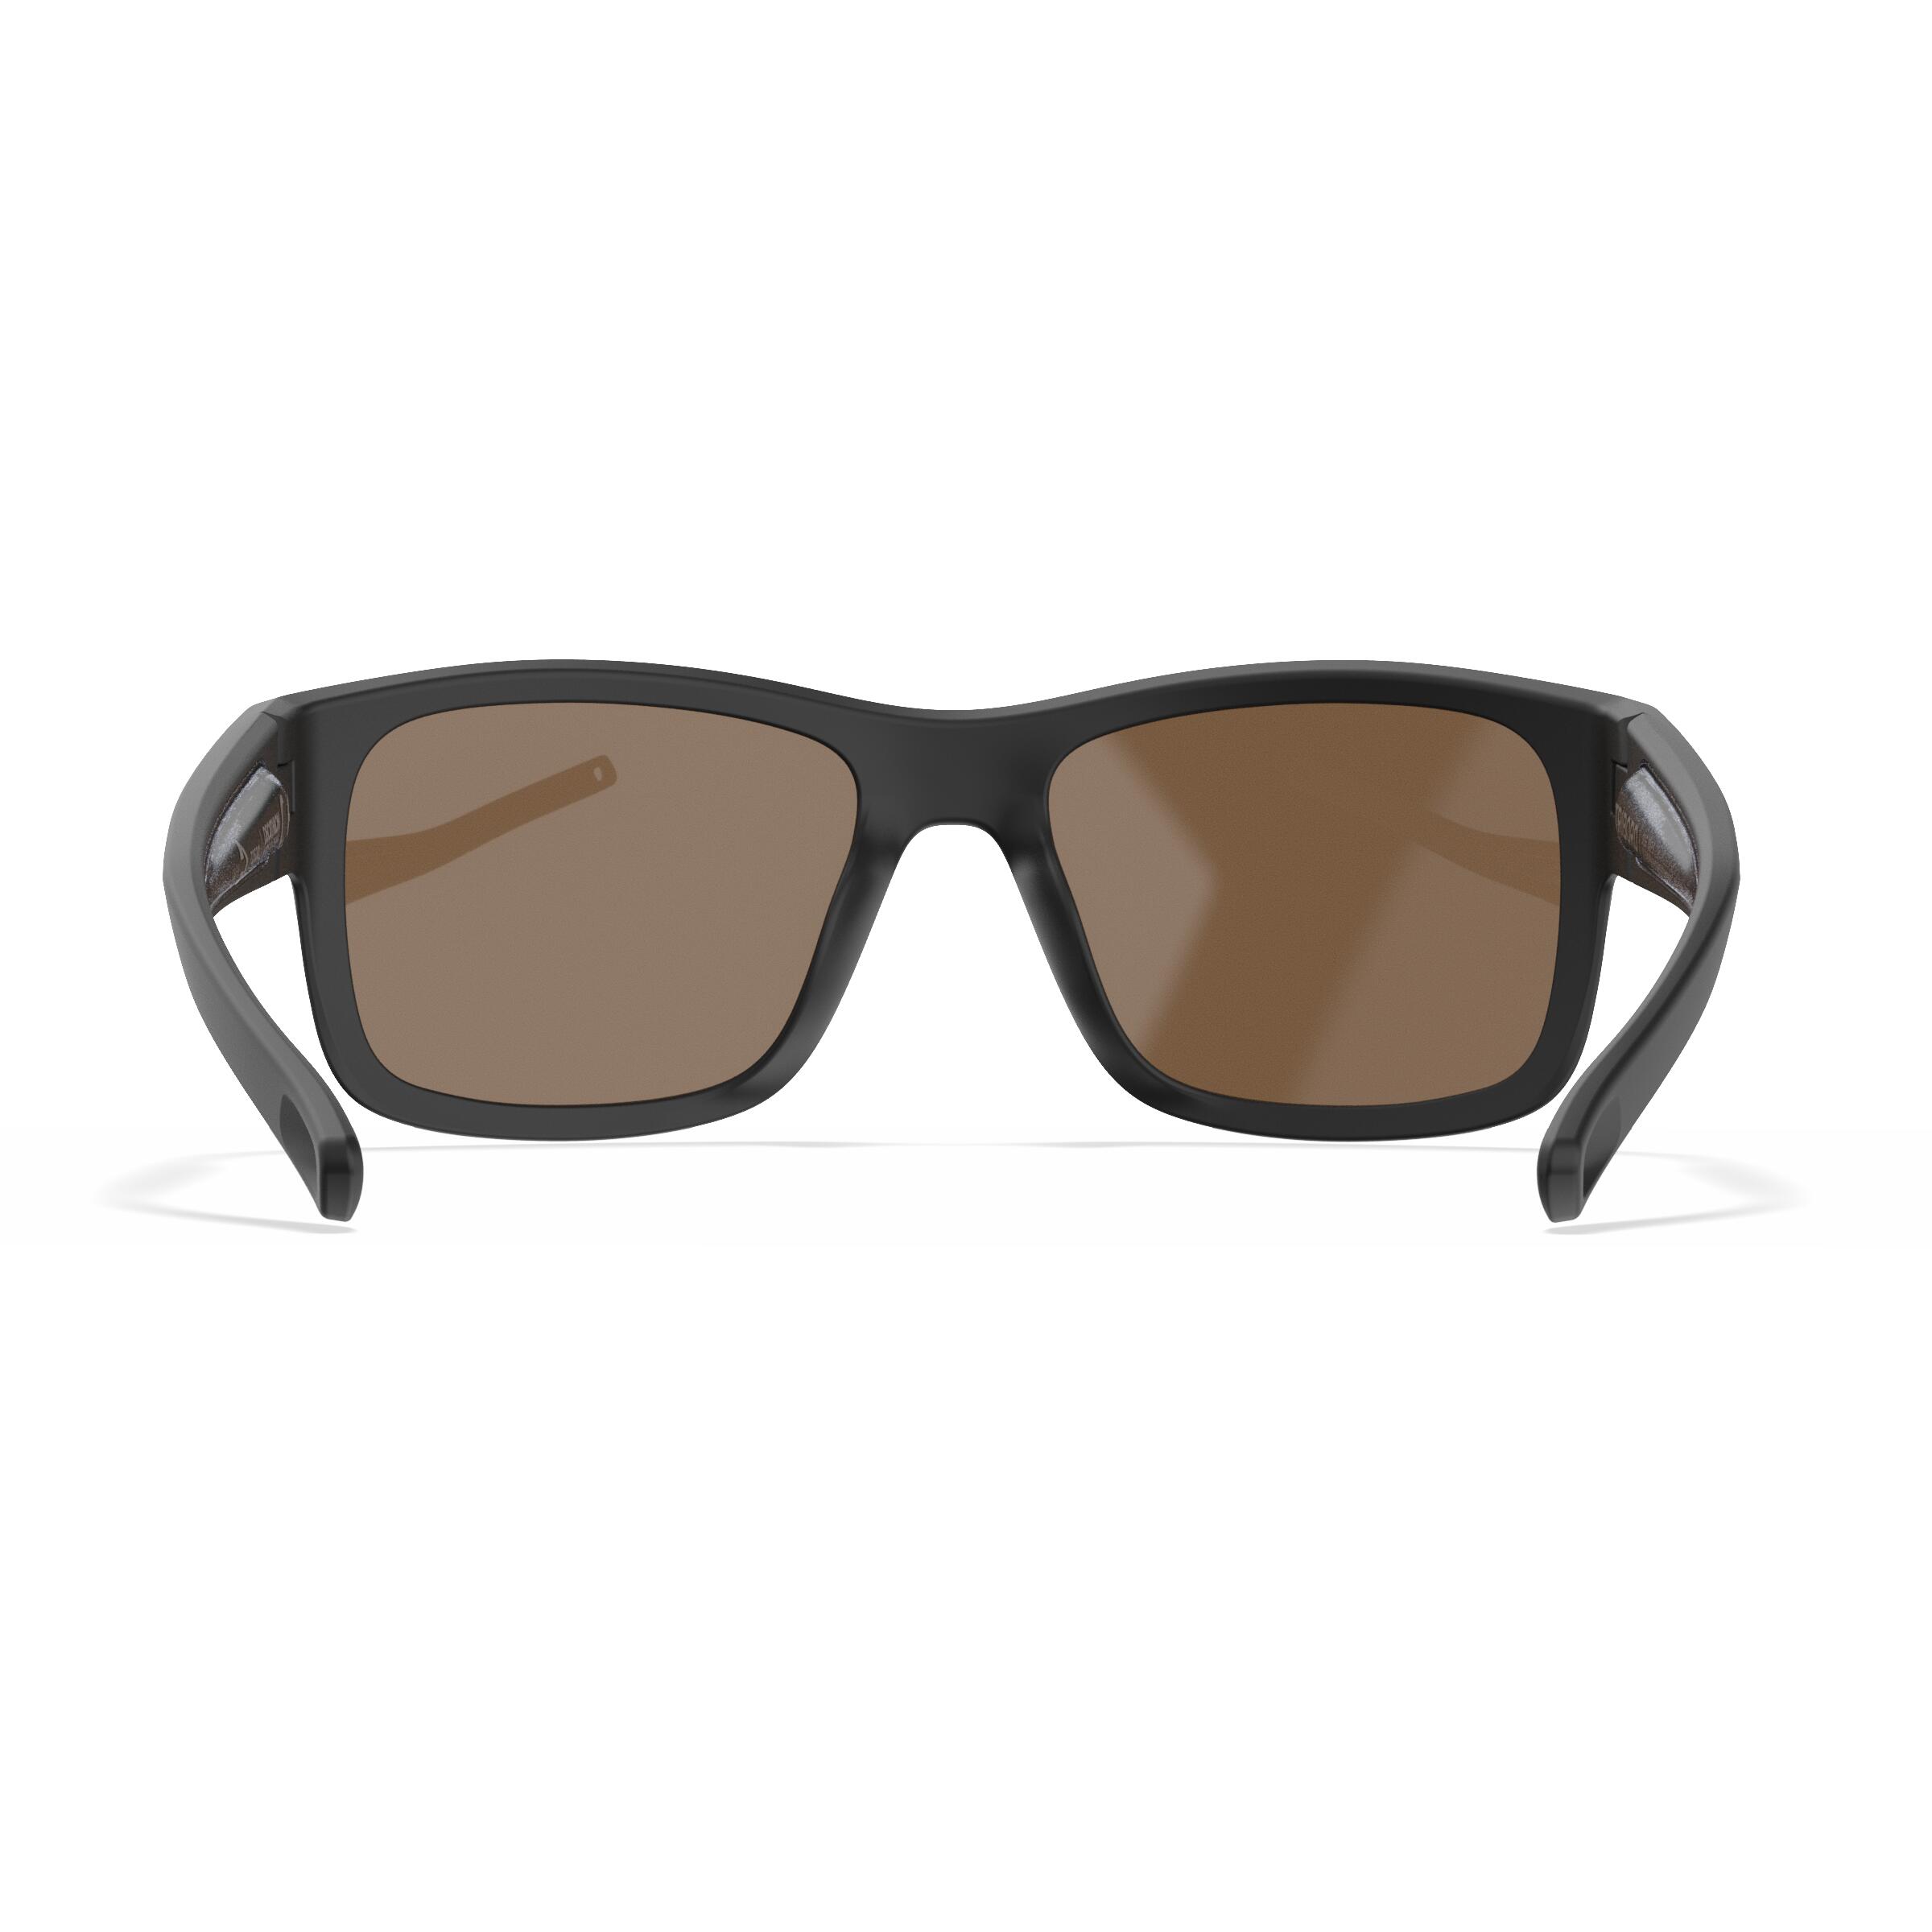 Sailing Floating Polarised Sunglasses SAILING 100 Size S Black 4/9